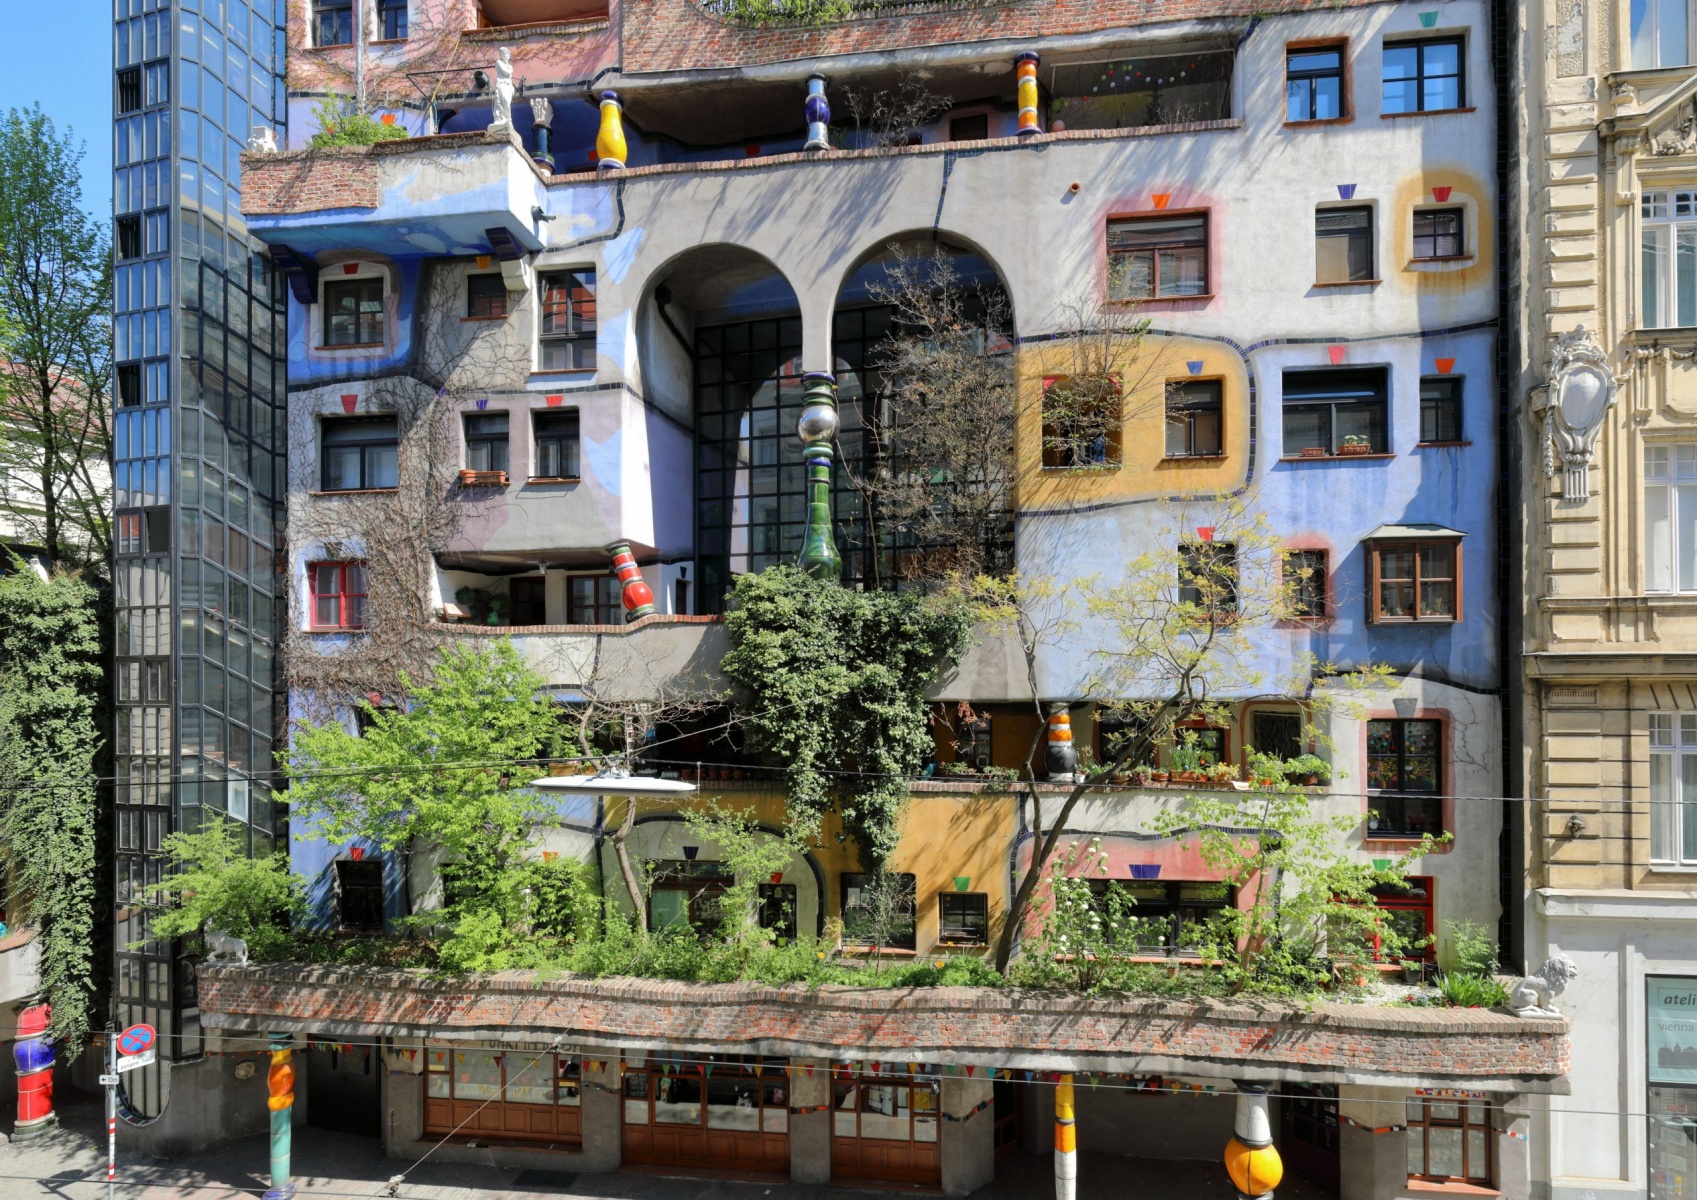 The Hundertwasserhaus